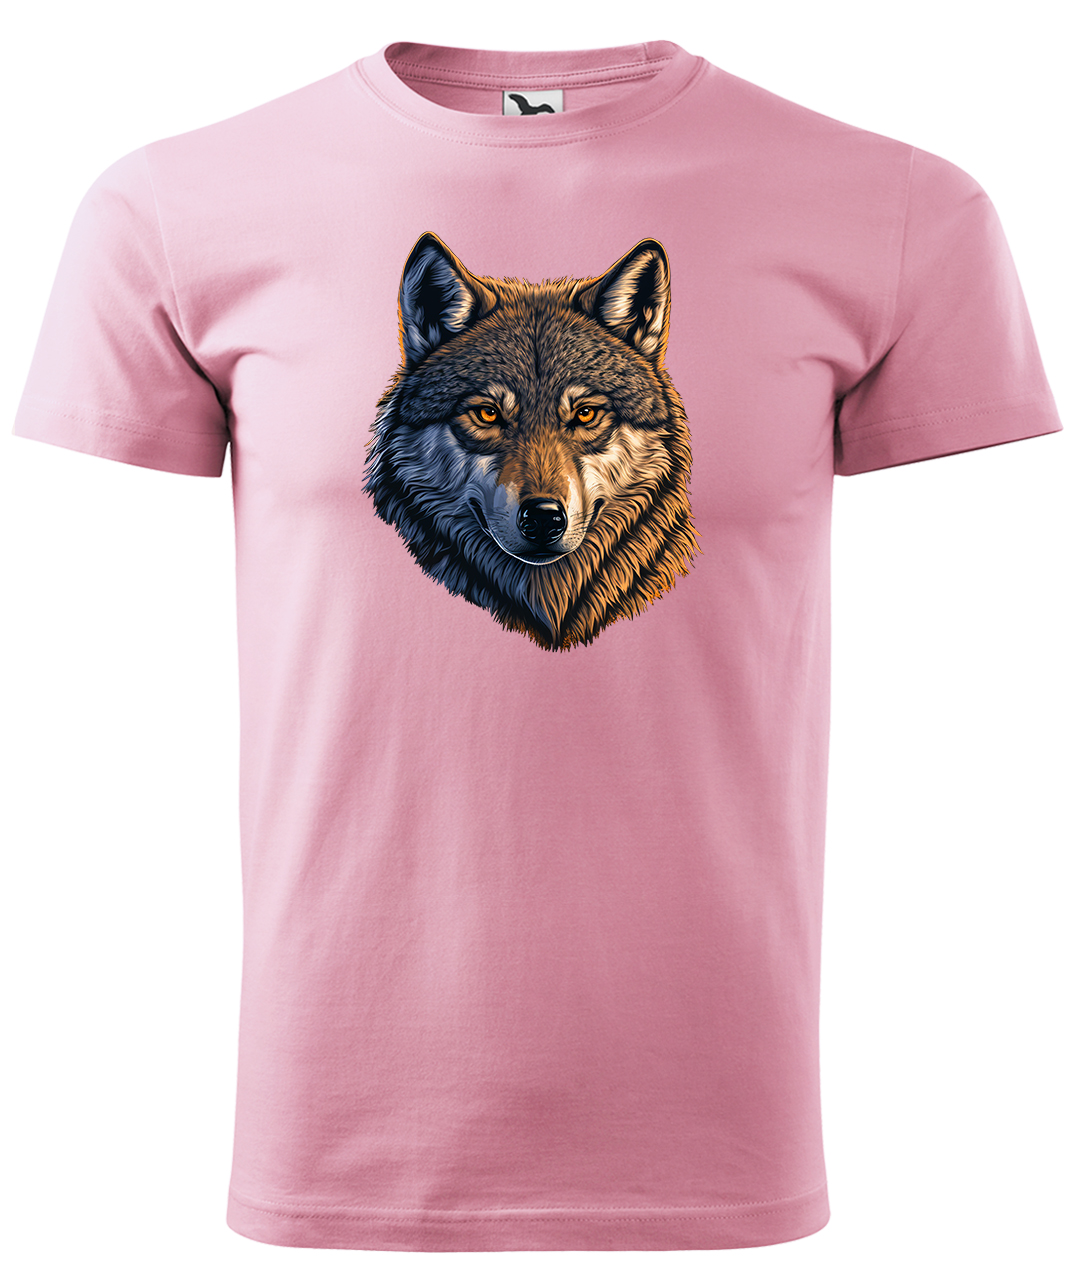 Dětské tričko s vlkem - Hlava vlka Velikost: 6 let / 122 cm, Barva: Růžová (30), Délka rukávu: Krátký rukáv